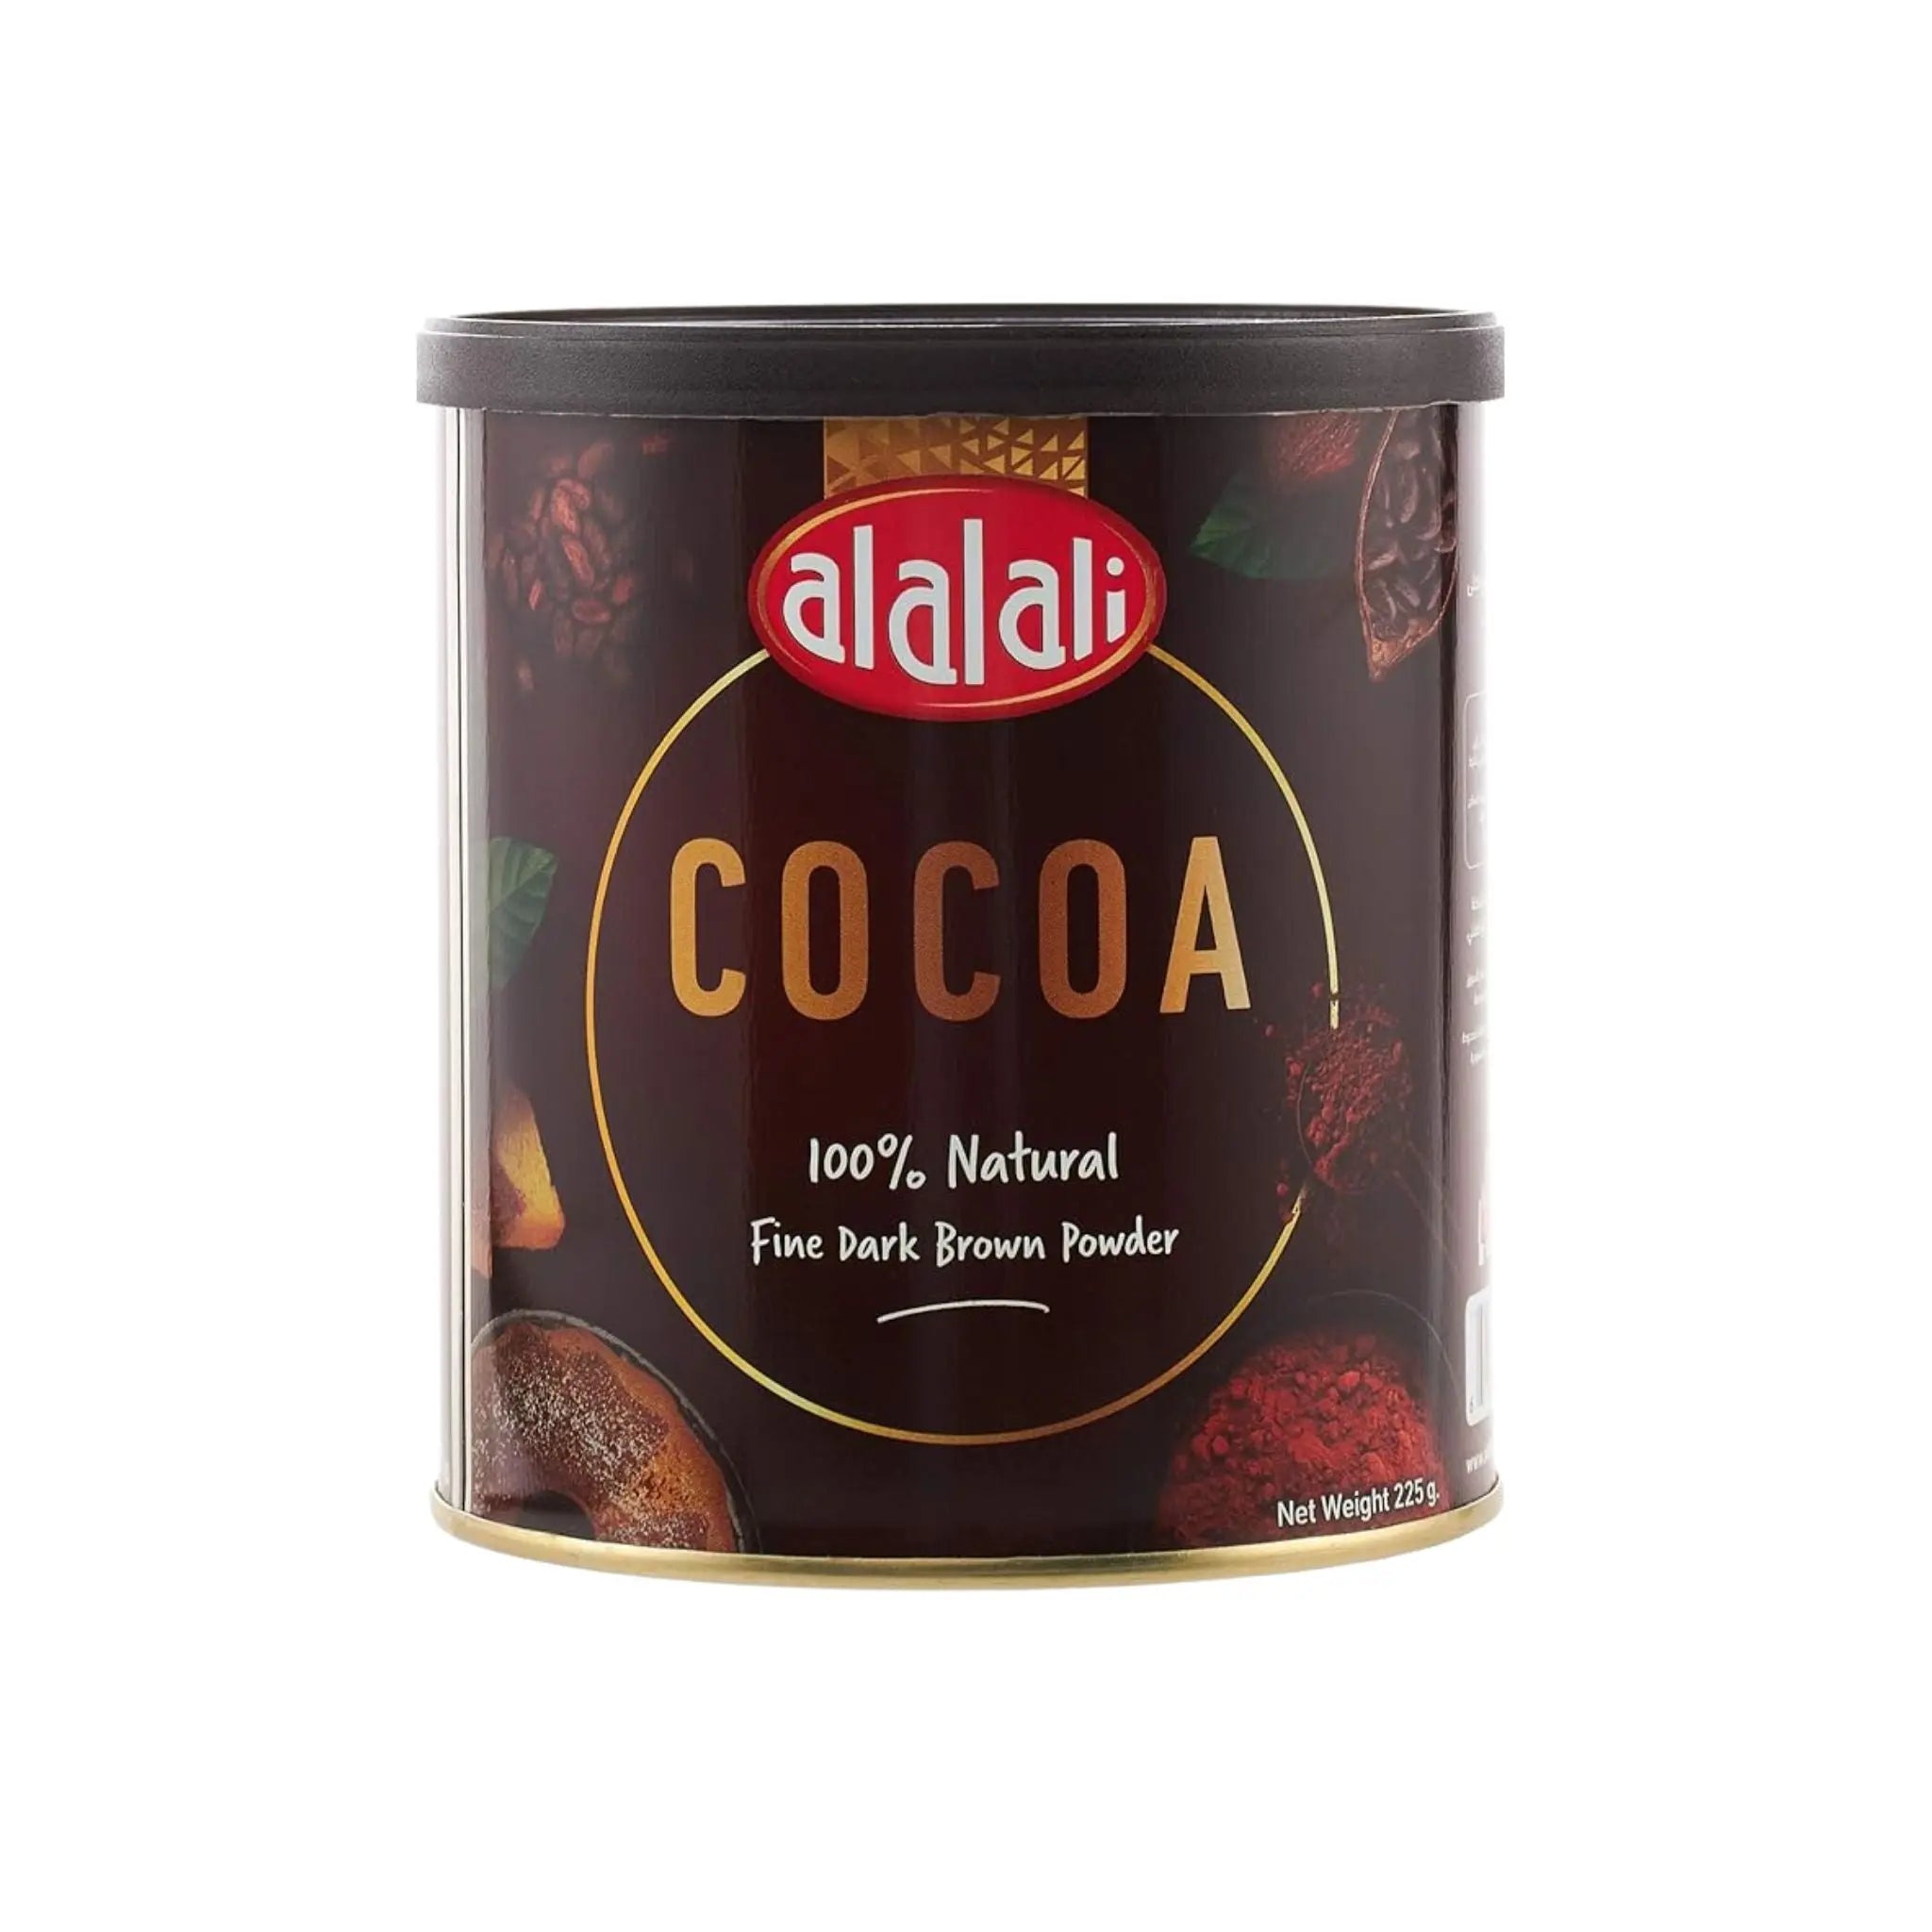 Al Alali Cocoa Powder - 12x225g (1 Carton) - Marino.AE